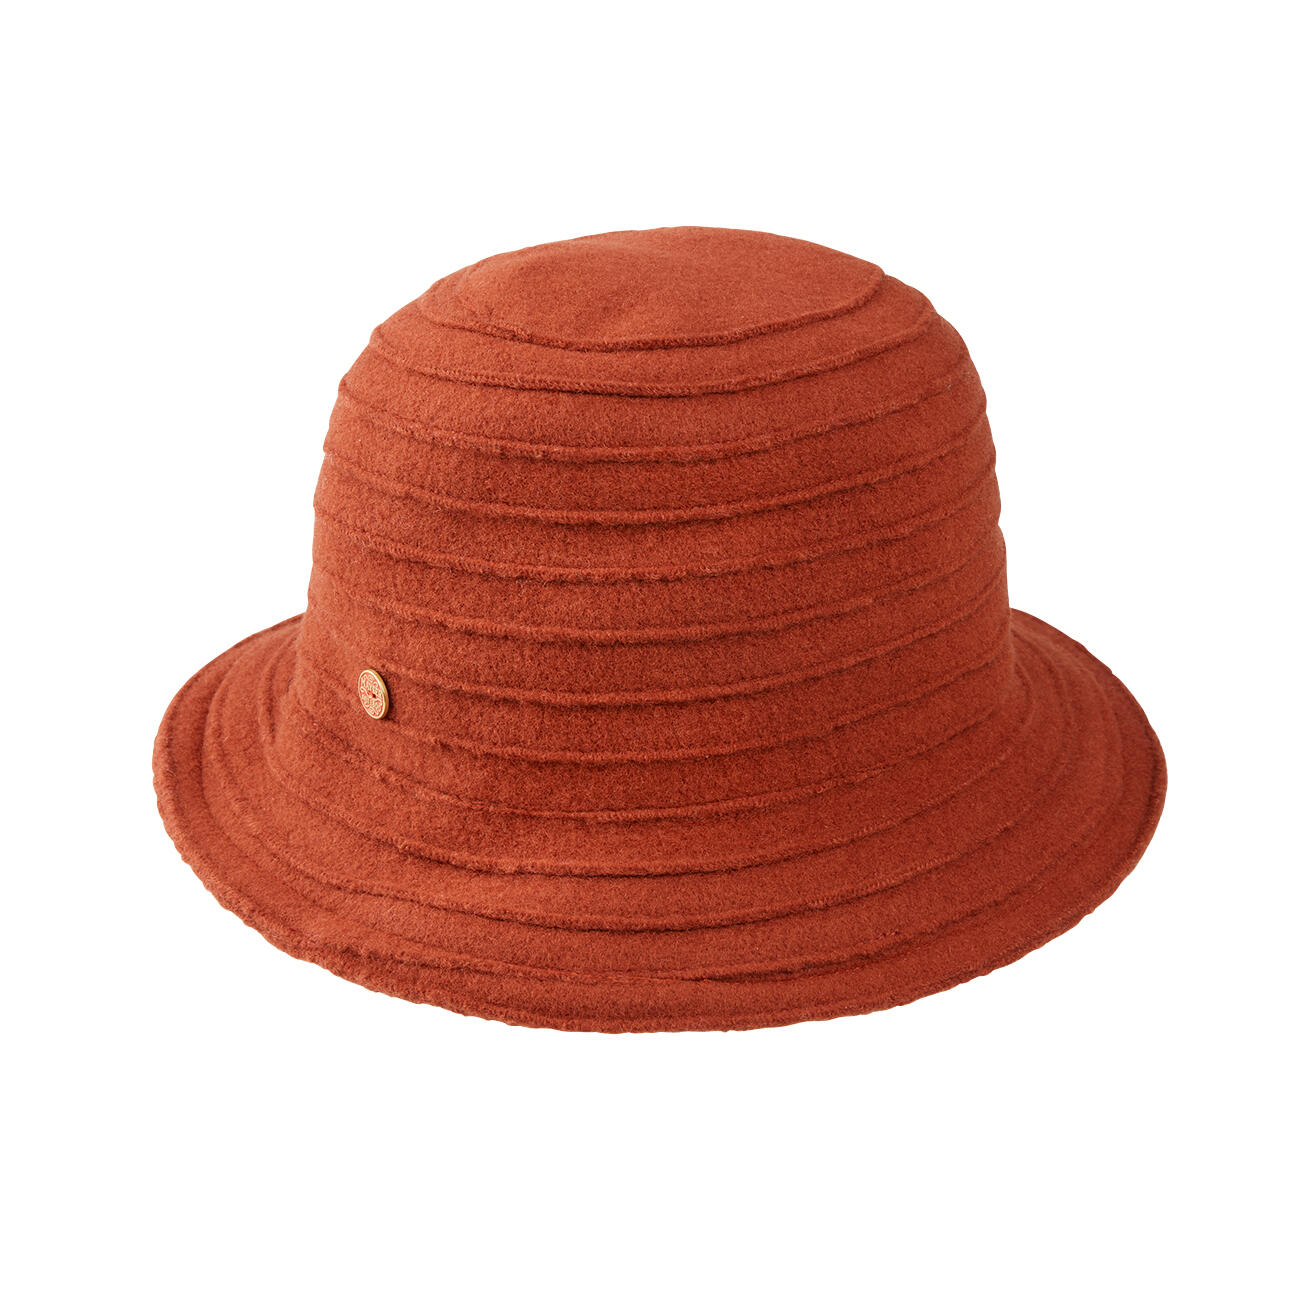 Bij wet Bijdrage legering Mayser wollen hoed met biezen | Klassiker entdecken